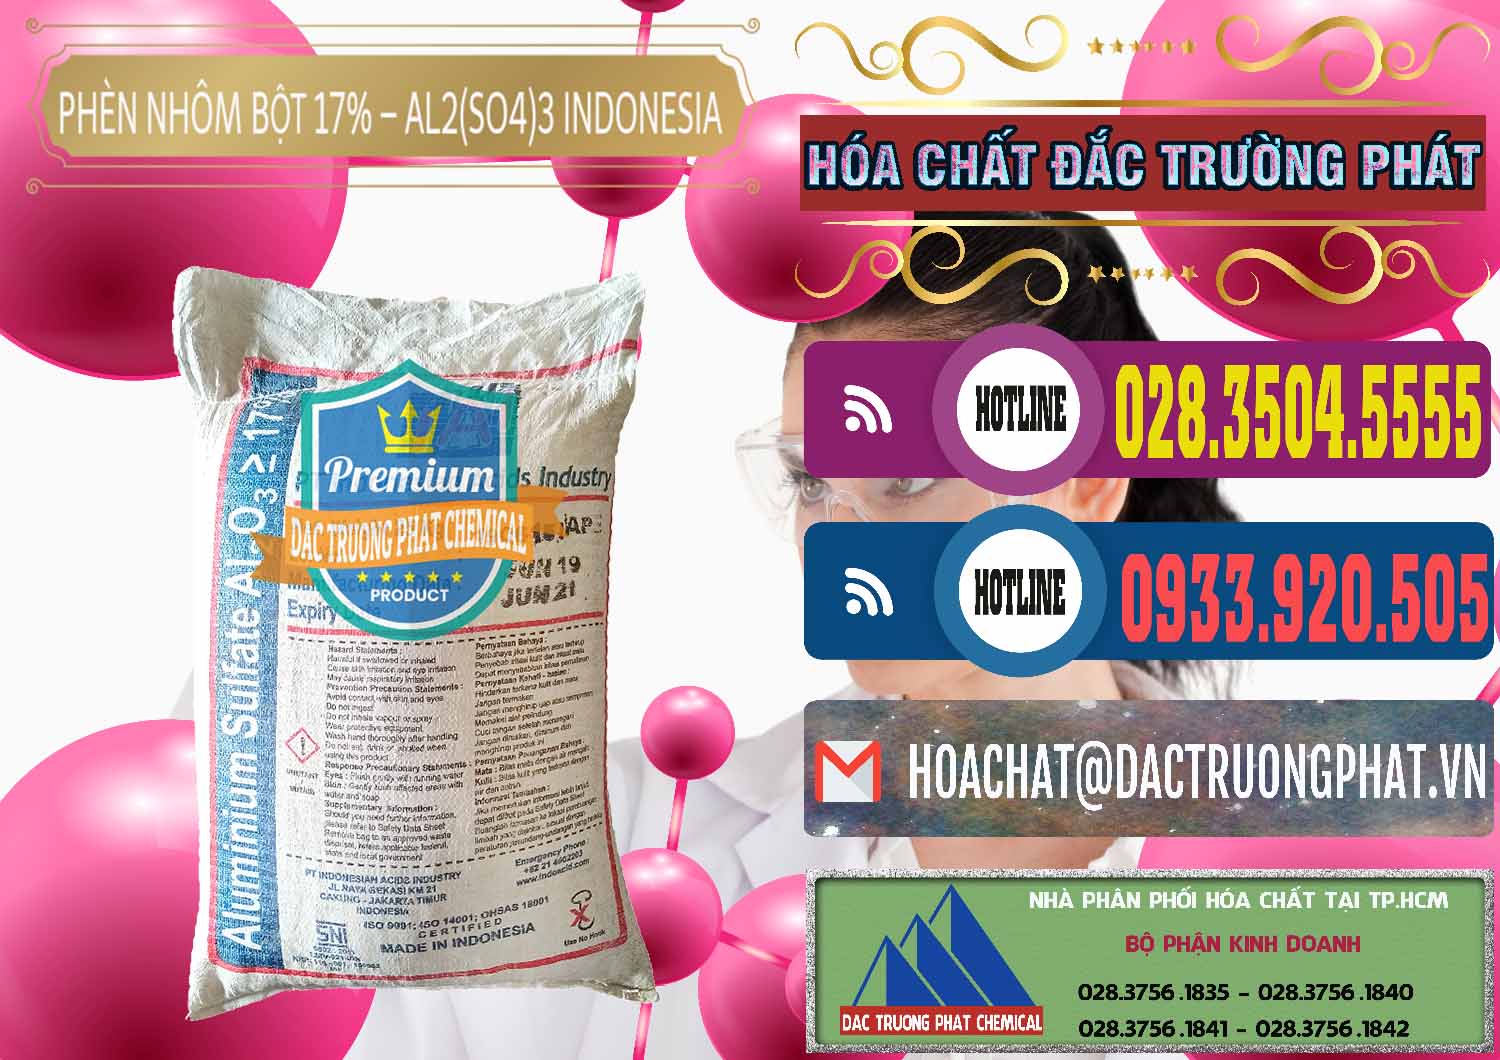 Đơn vị chuyên nhập khẩu _ bán Phèn Nhôm Bột - Al2(SO4)3 17% bao 25kg Indonesia - 0114 - Cty phân phối và kinh doanh hóa chất tại TP.HCM - muabanhoachat.com.vn